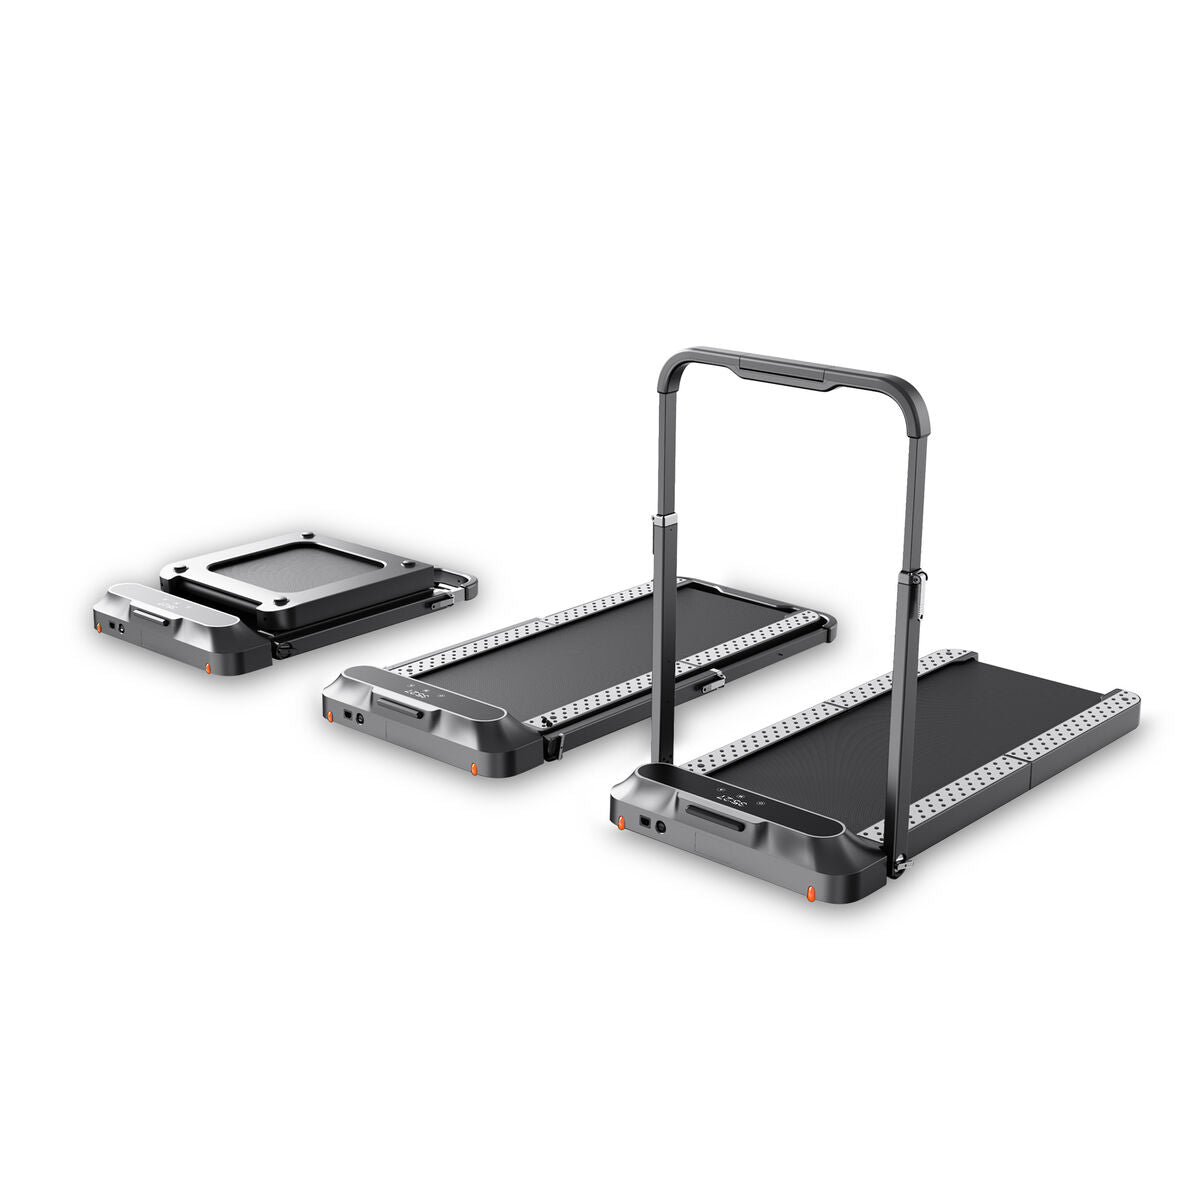 Treadmill Xiaomi Kingsmith R2B (Refurbished A)